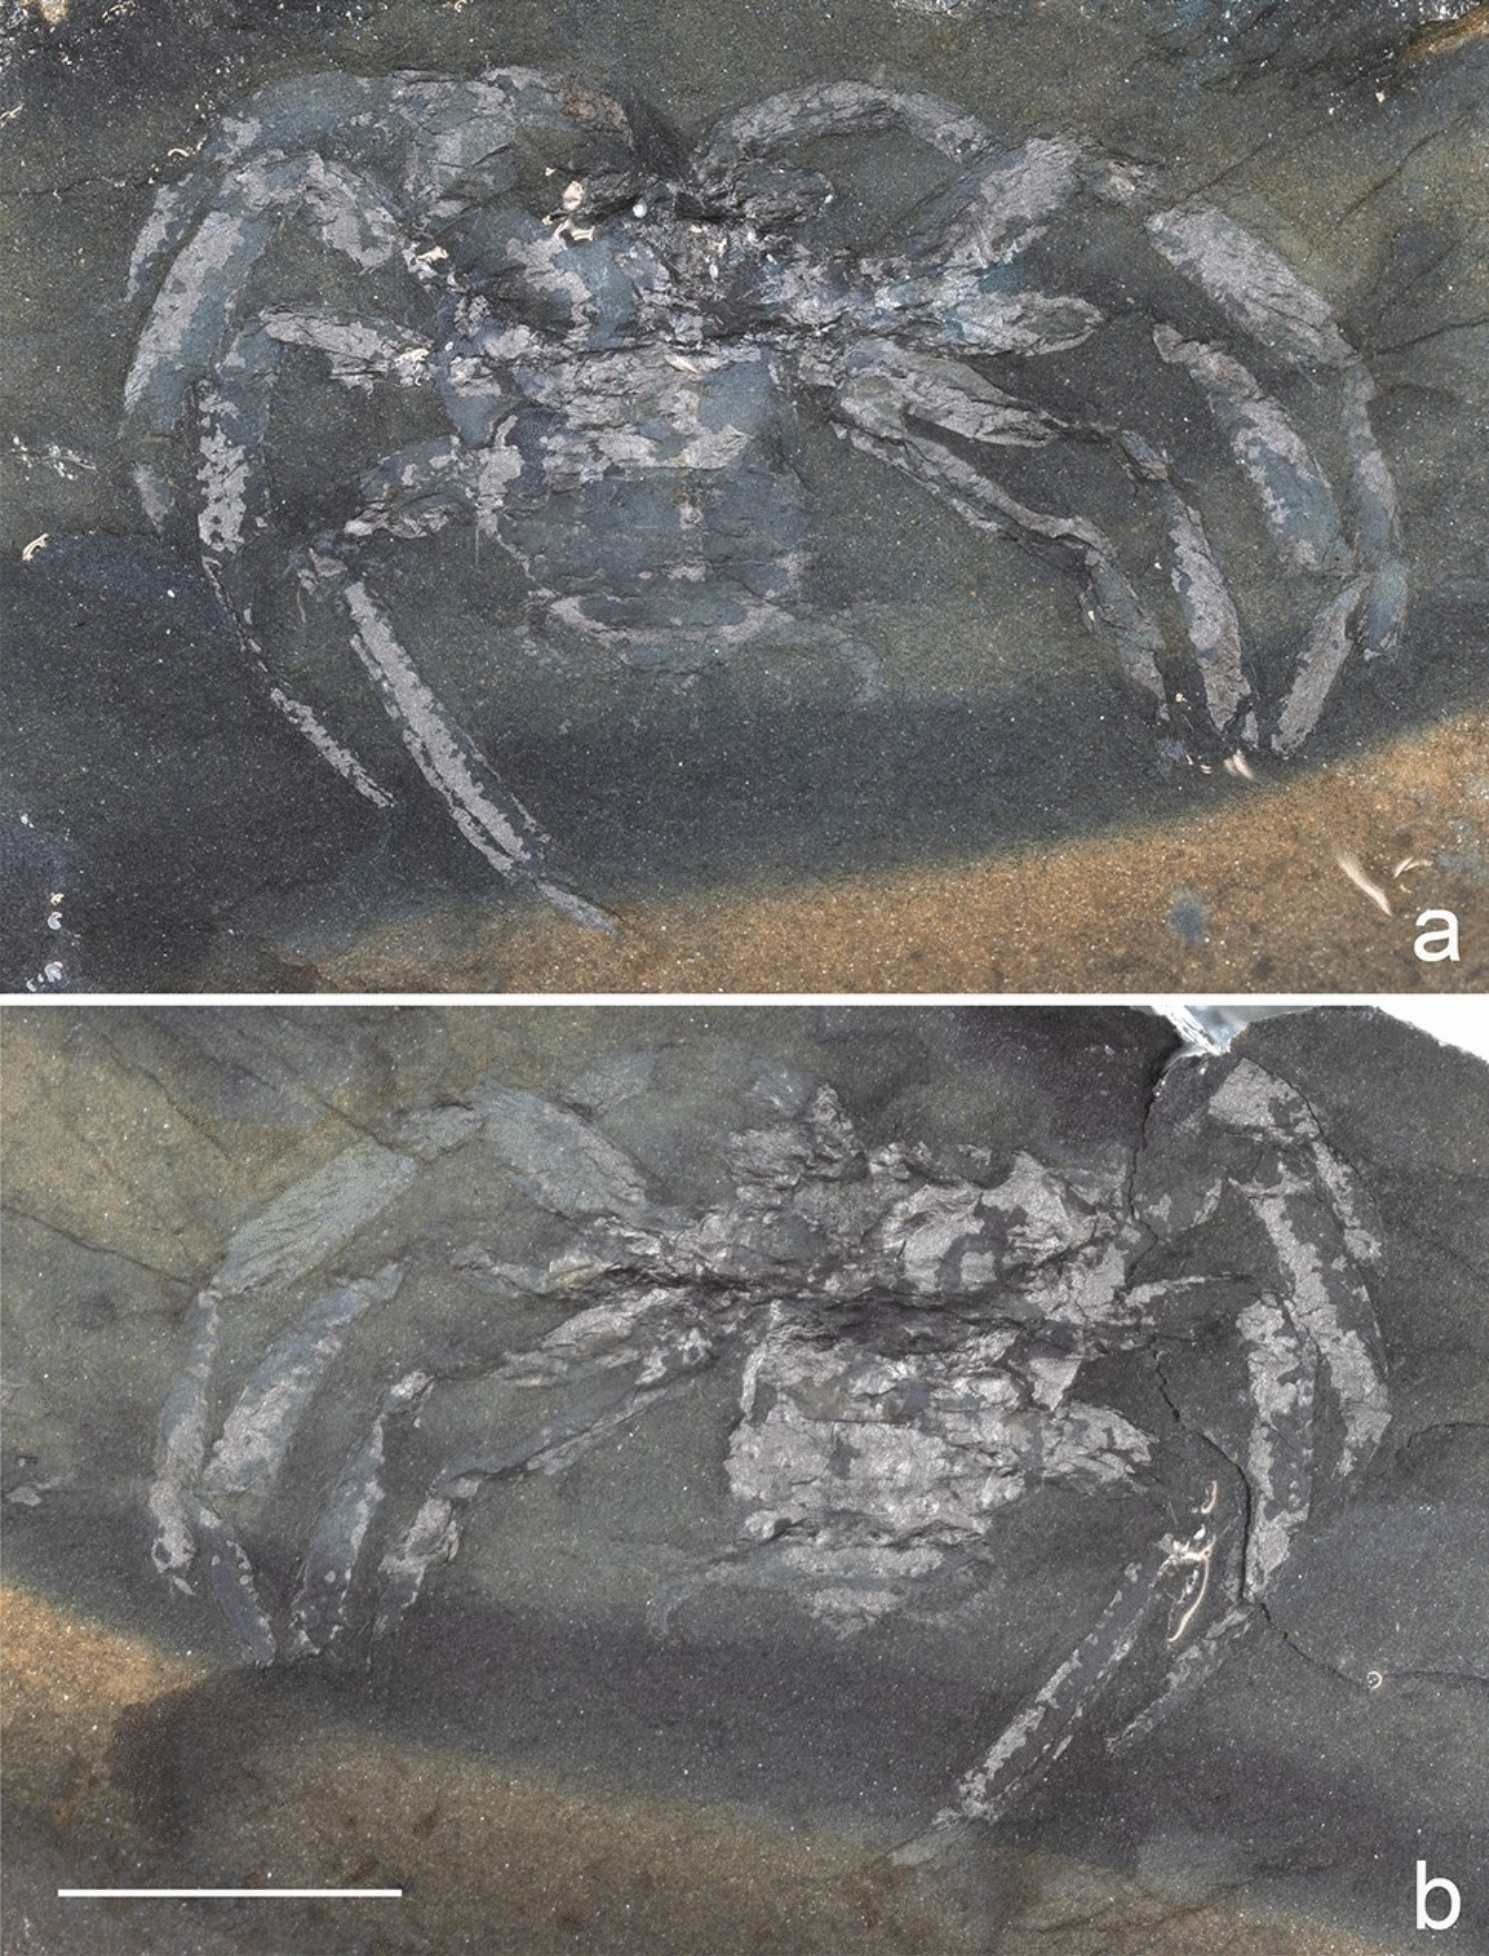 Arthrolycosa wolterbeeki sp. nov., de oudste fossiele spin (Arachnida: Araneae) uit Duitsland, uit het late Carboon van Piesberg bij Osnabrück, Nedersaksen.